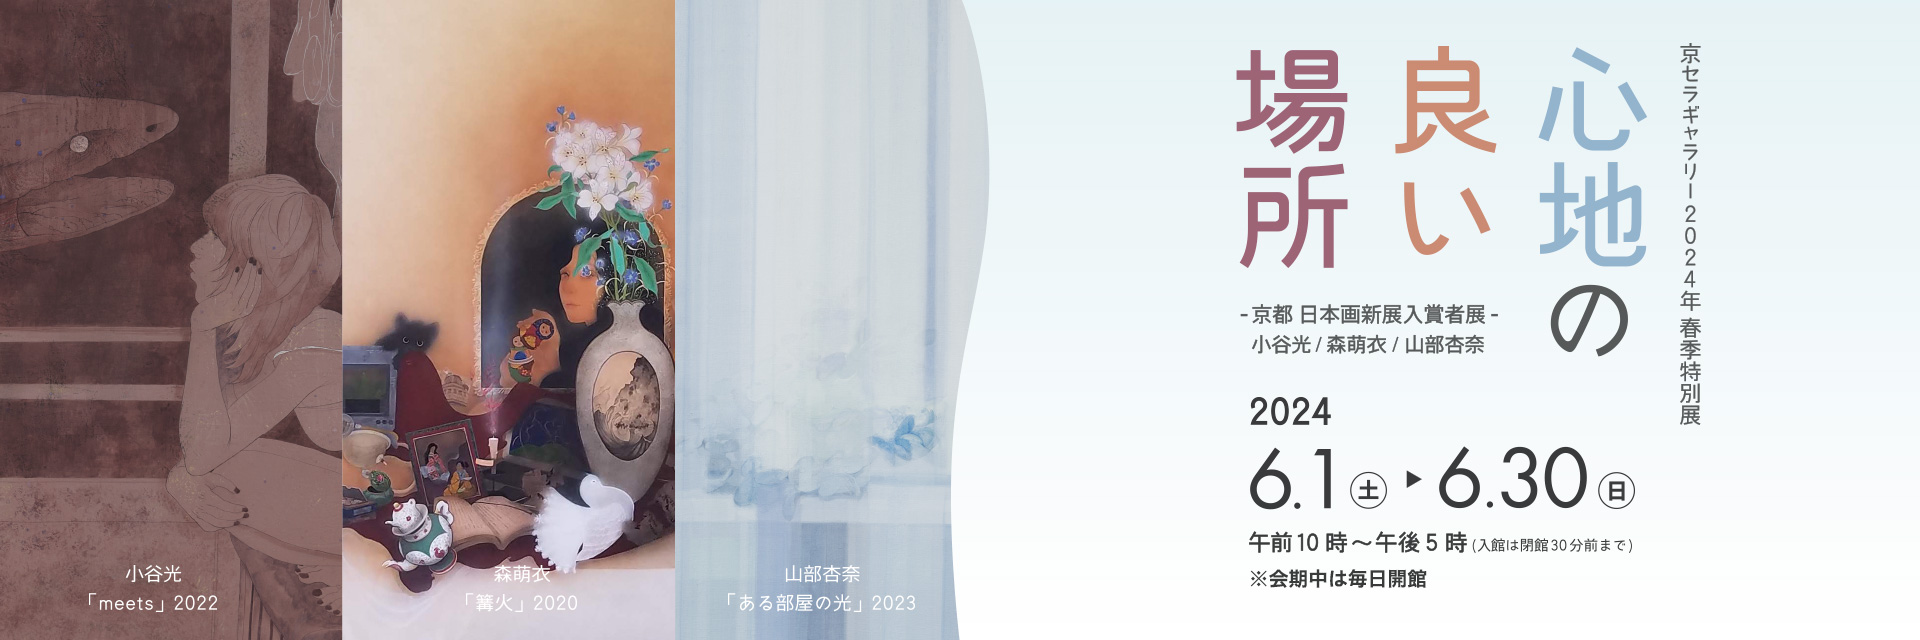 京セラギャラリー2024年春期特別展『心地の良い場所』